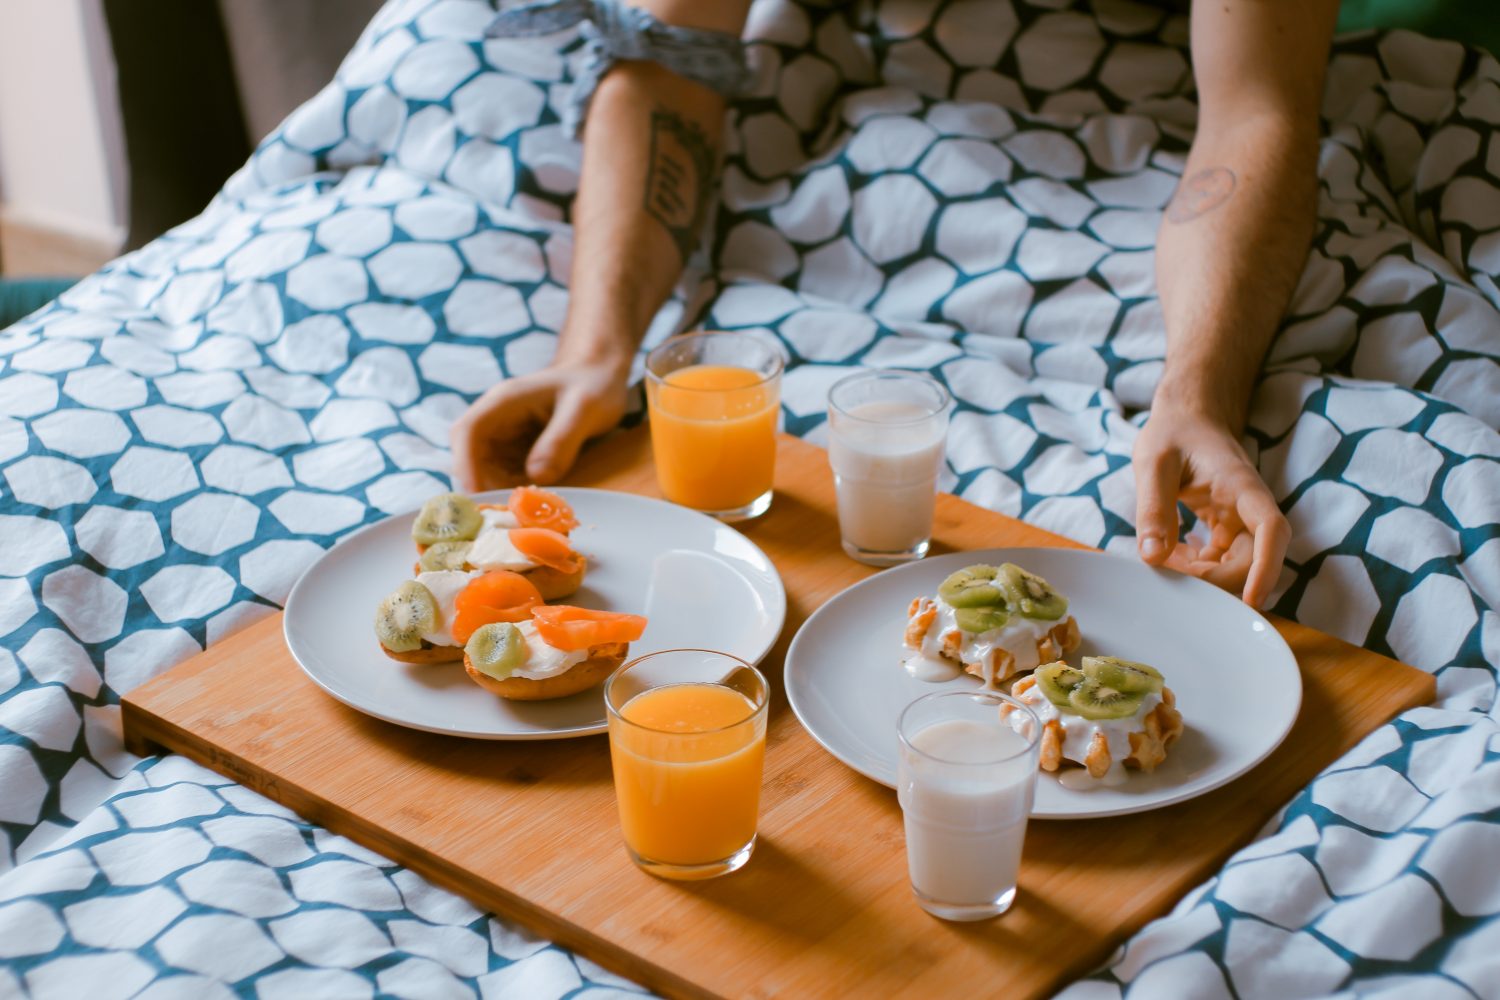 Una colazione per combattere l'insonnia. Albicocche e kiwi favoriscono un riposo più sereno.